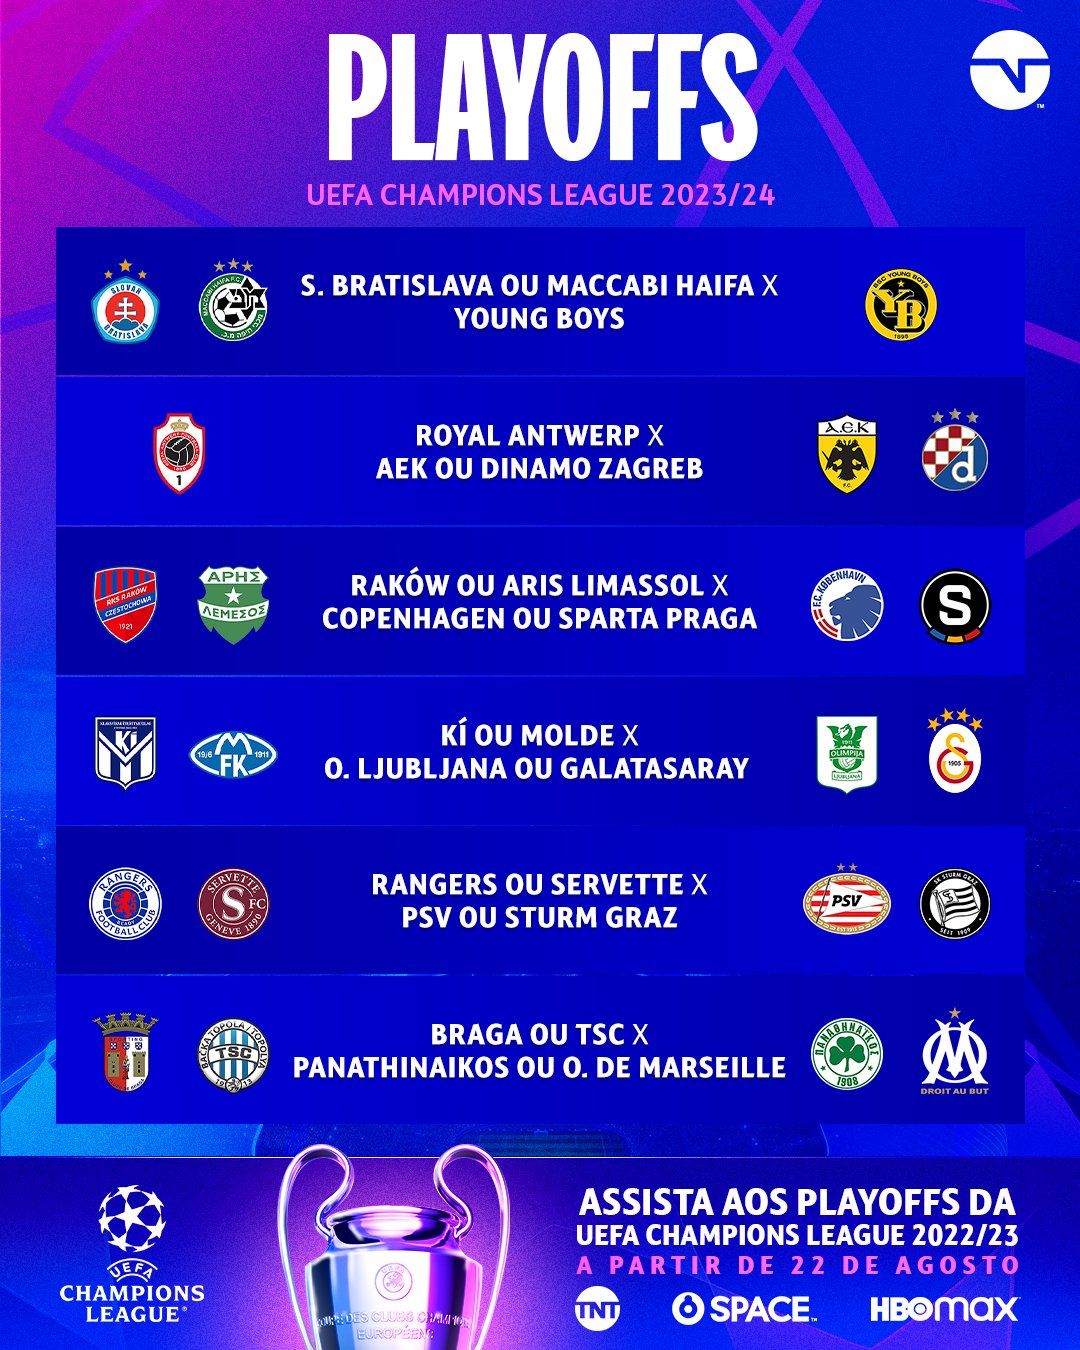 TNT Sports Brasil - HOJE TEM MAIS JOGÃO NA CHAMPIONS LEAGUE! Quais são os  seus palpites para as partidas da maior competição de clubes do mundo?  #CasaDaChampions